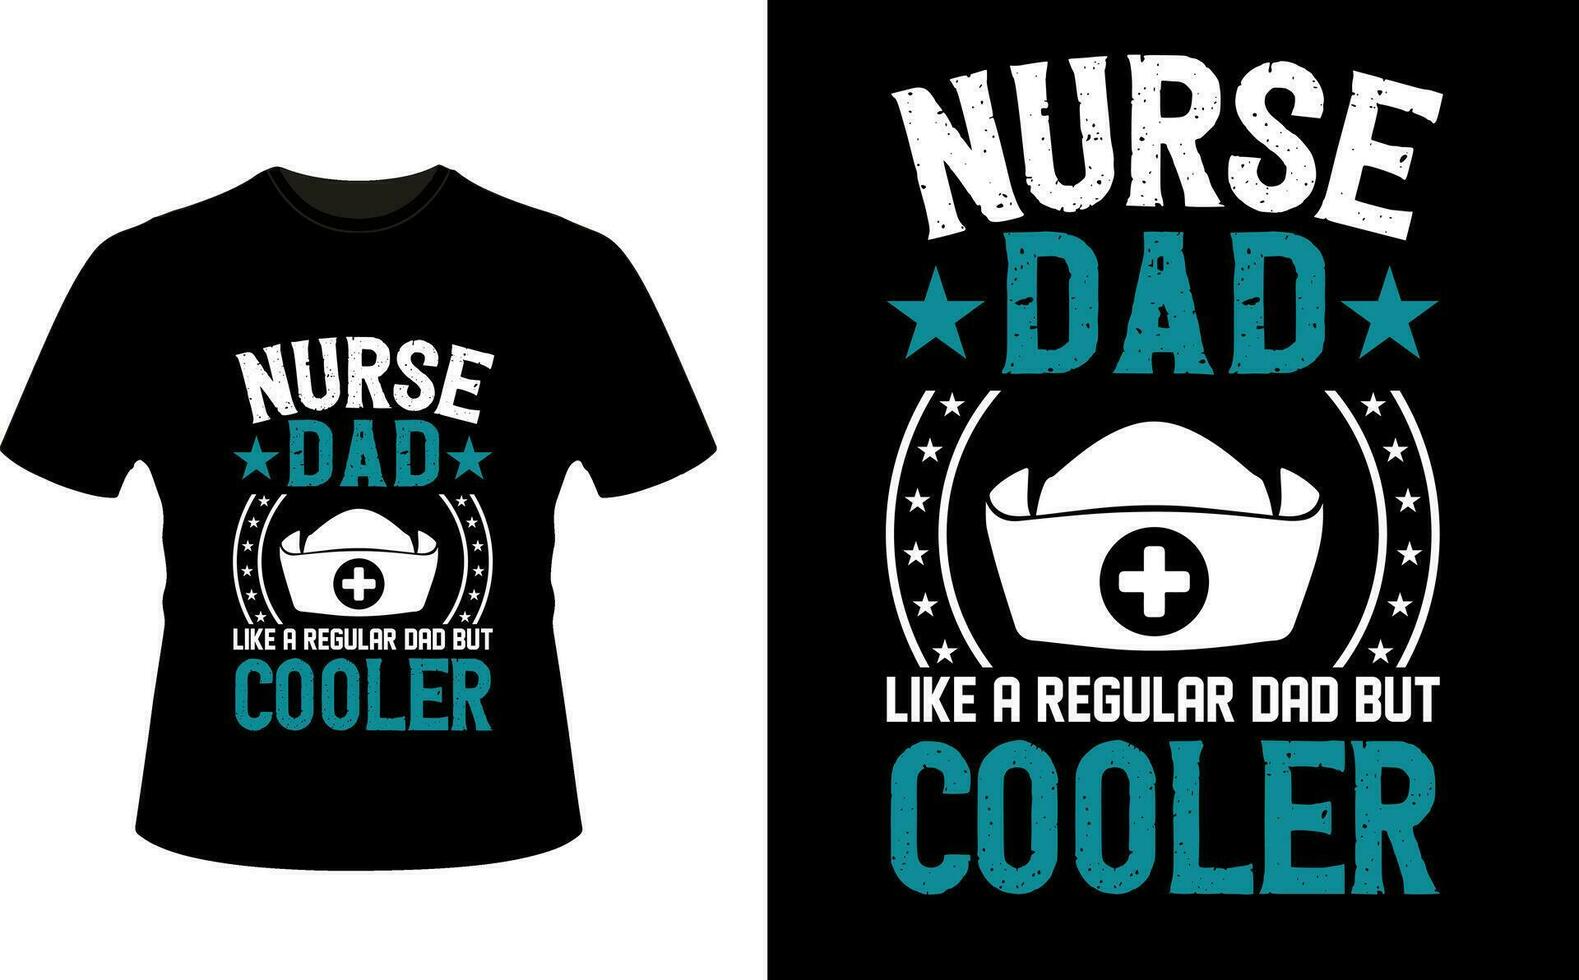 verpleegster vader Leuk vinden een regelmatig vader maar koeler of vader papa t-shirt ontwerp of vader dag t overhemd ontwerp vector